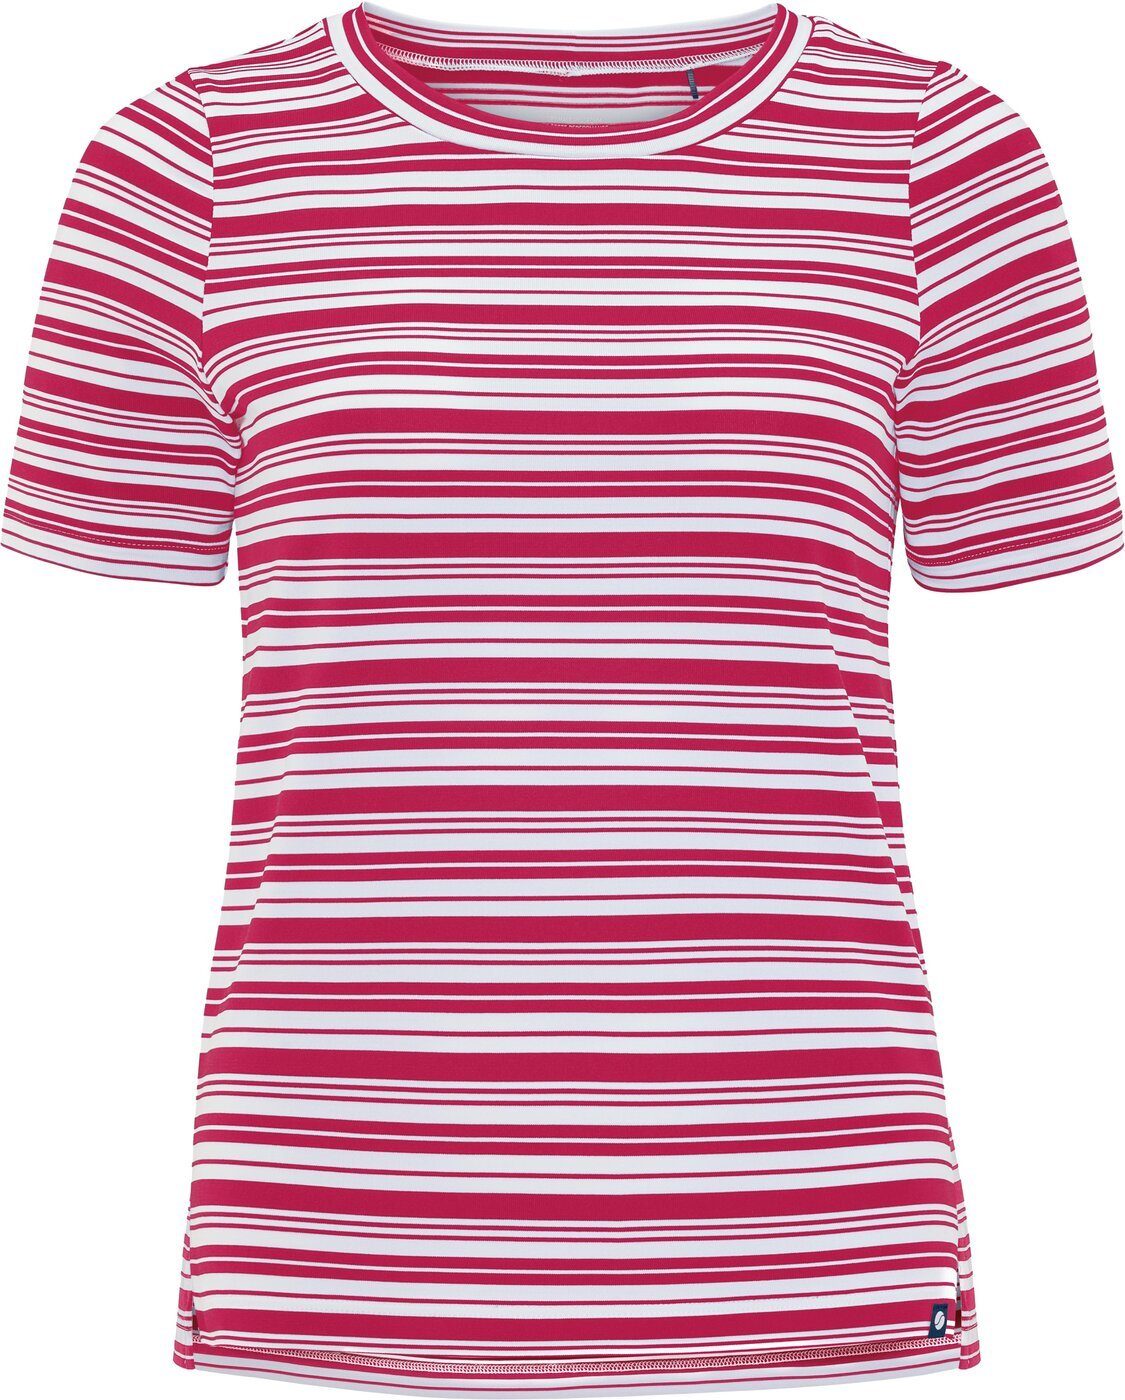 MAURAW-SHIRT SCHNEIDER T-Shirt RUBYPINK/WEIß Sportswear